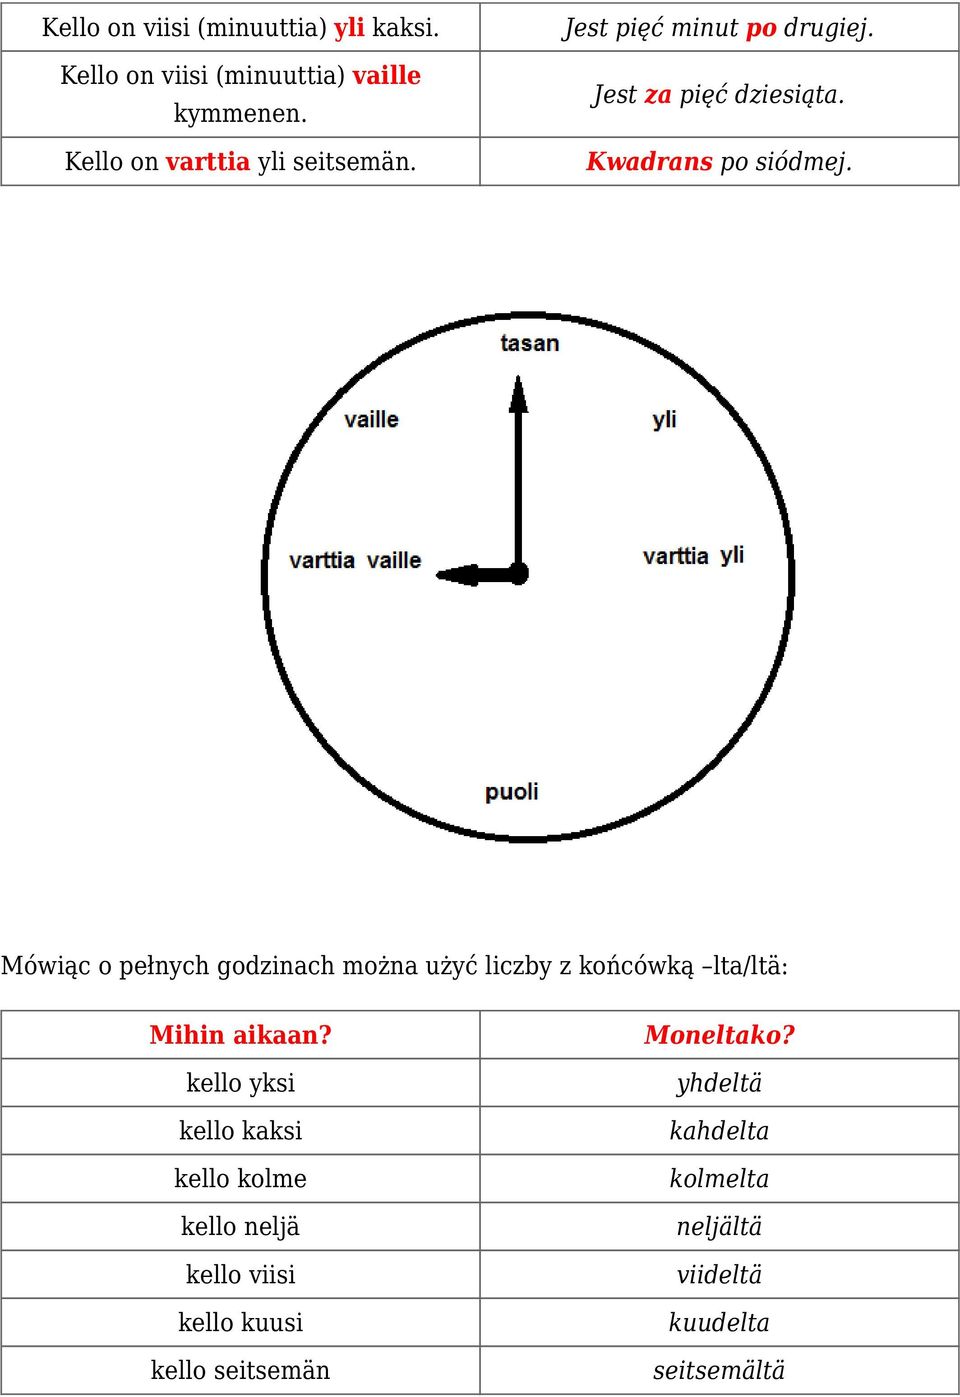 Mówiąc o pełnych godzinach można użyć liczby z końcówką lta/ltä: Mihin aikaan?